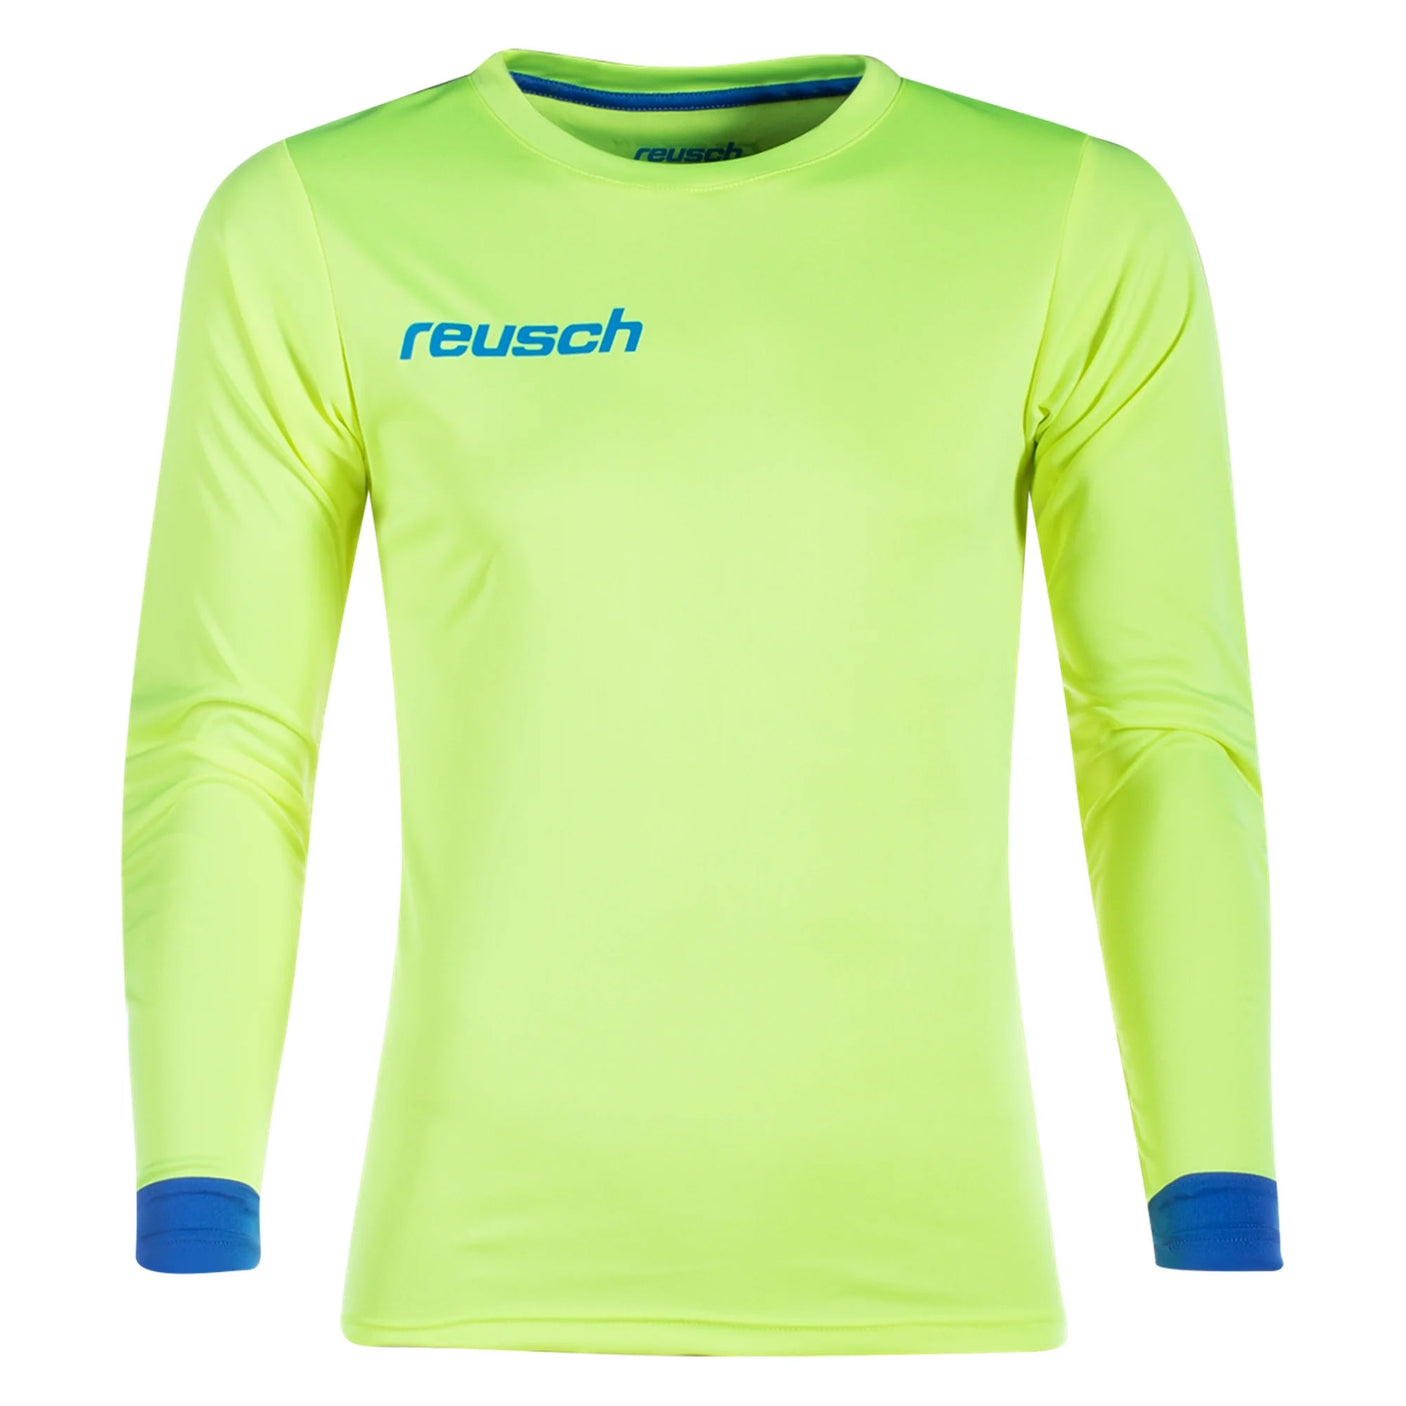 Reusch Men's Match Long Sleeve Padded Goalkeeper Jersey Yellow/Blue Front